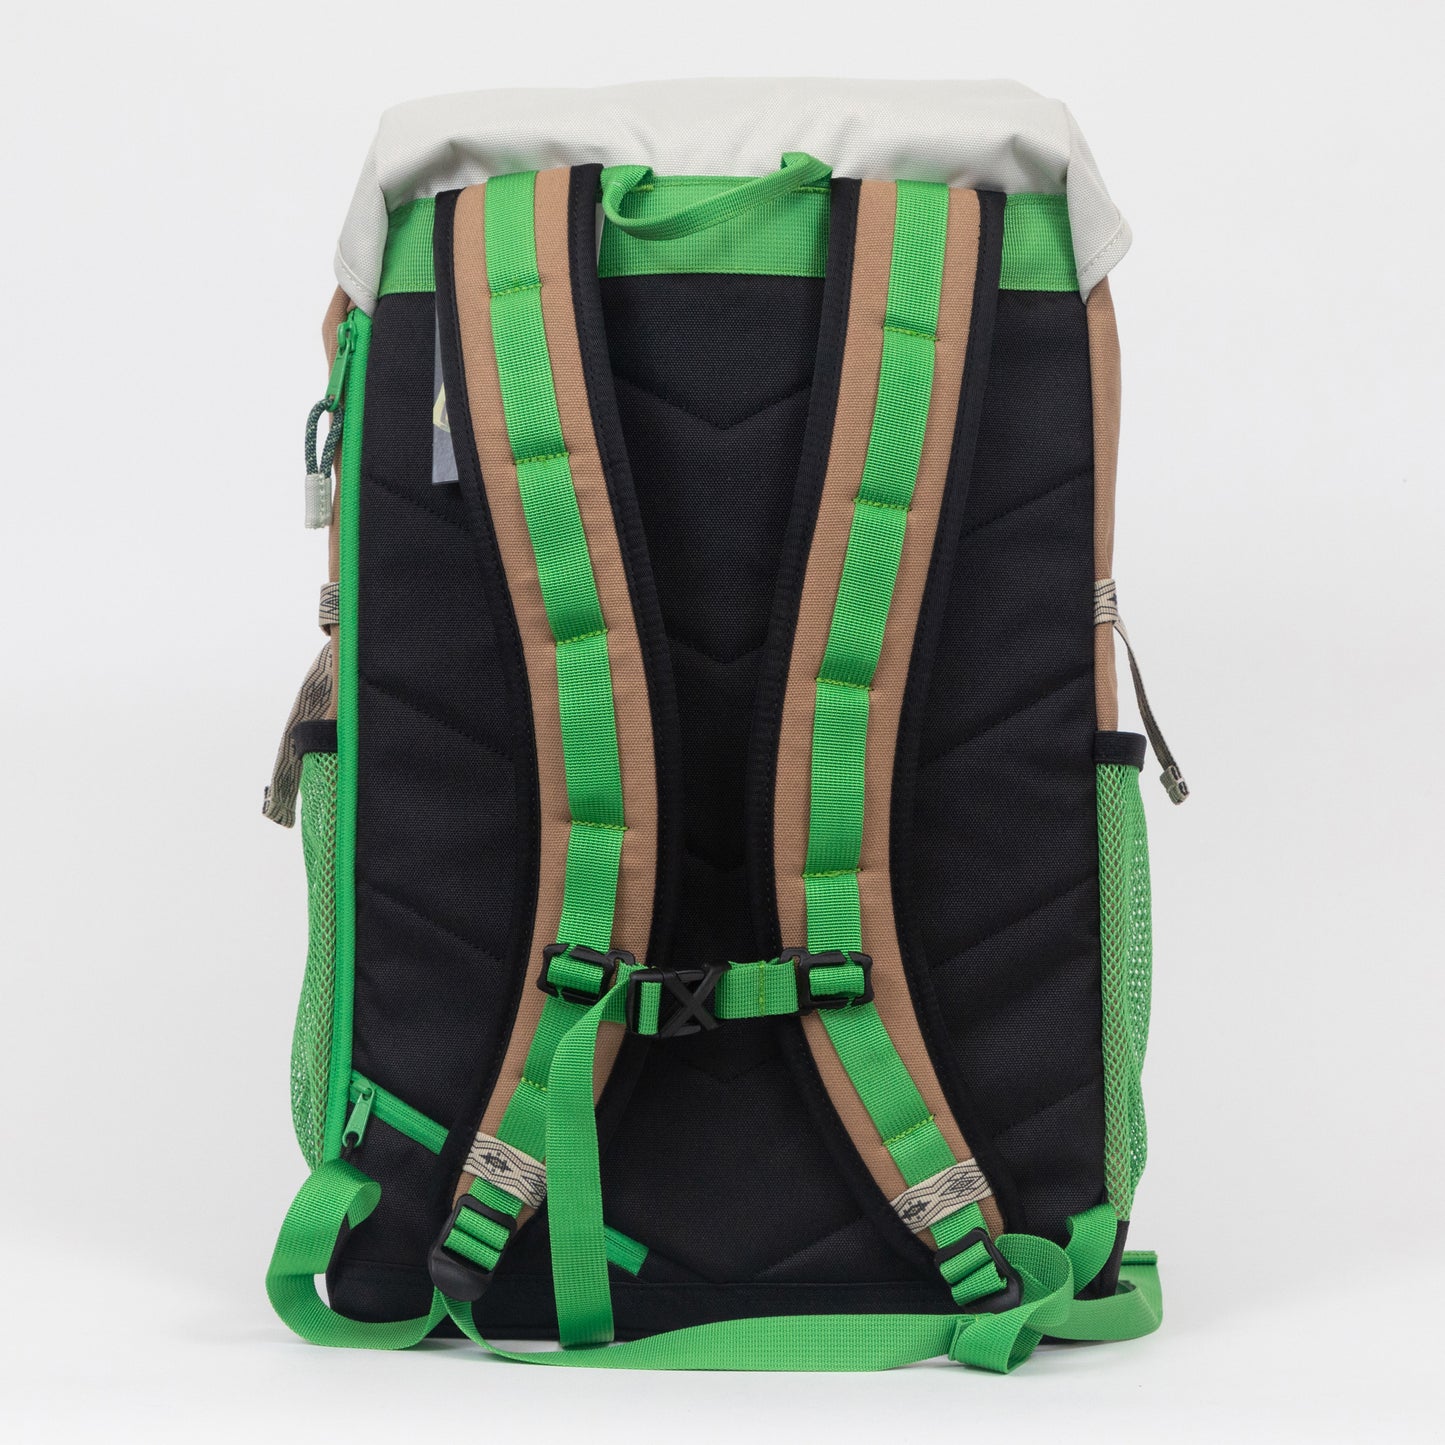 KAVU Timaru Backpack in GREEN & TAN